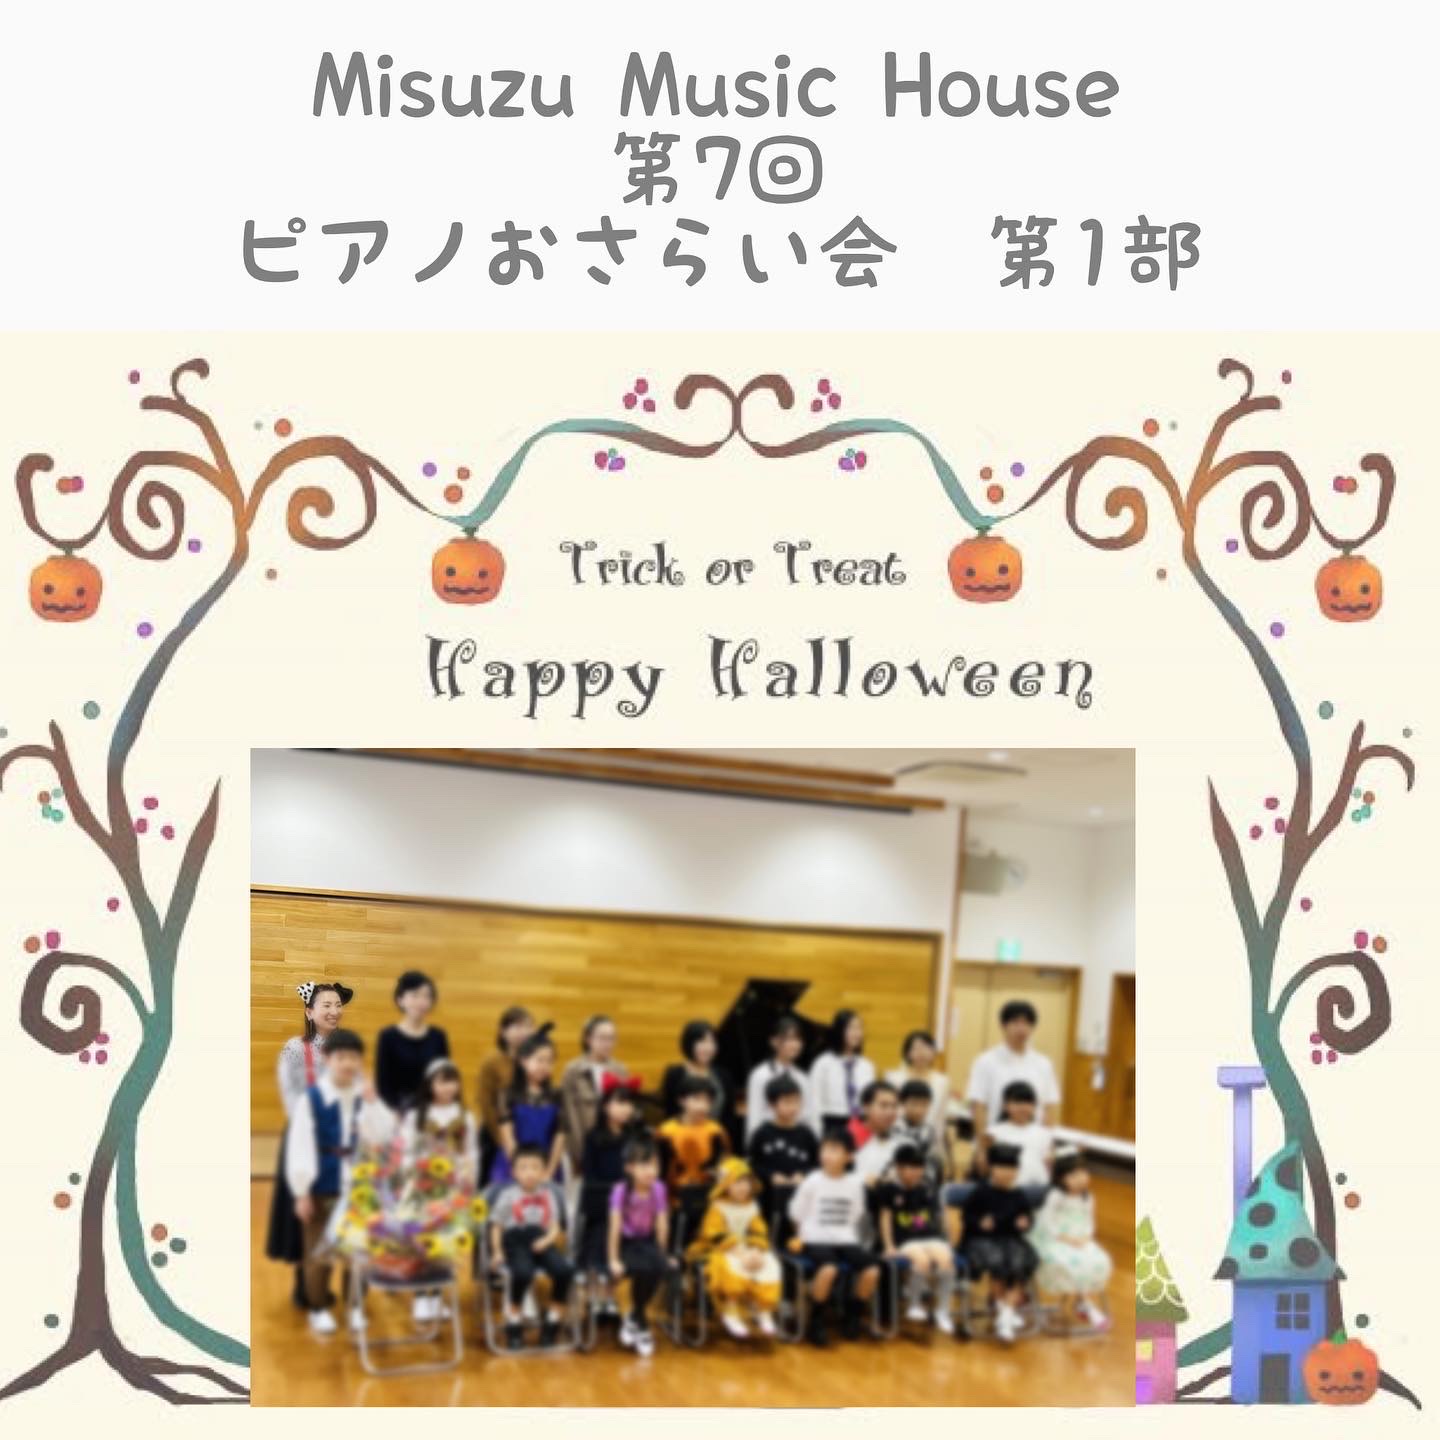 F11682A2-0B78-49CF-AE1F-5CEDE43DE1BA.JP alt="Misuzu Music Houseおさらい会"